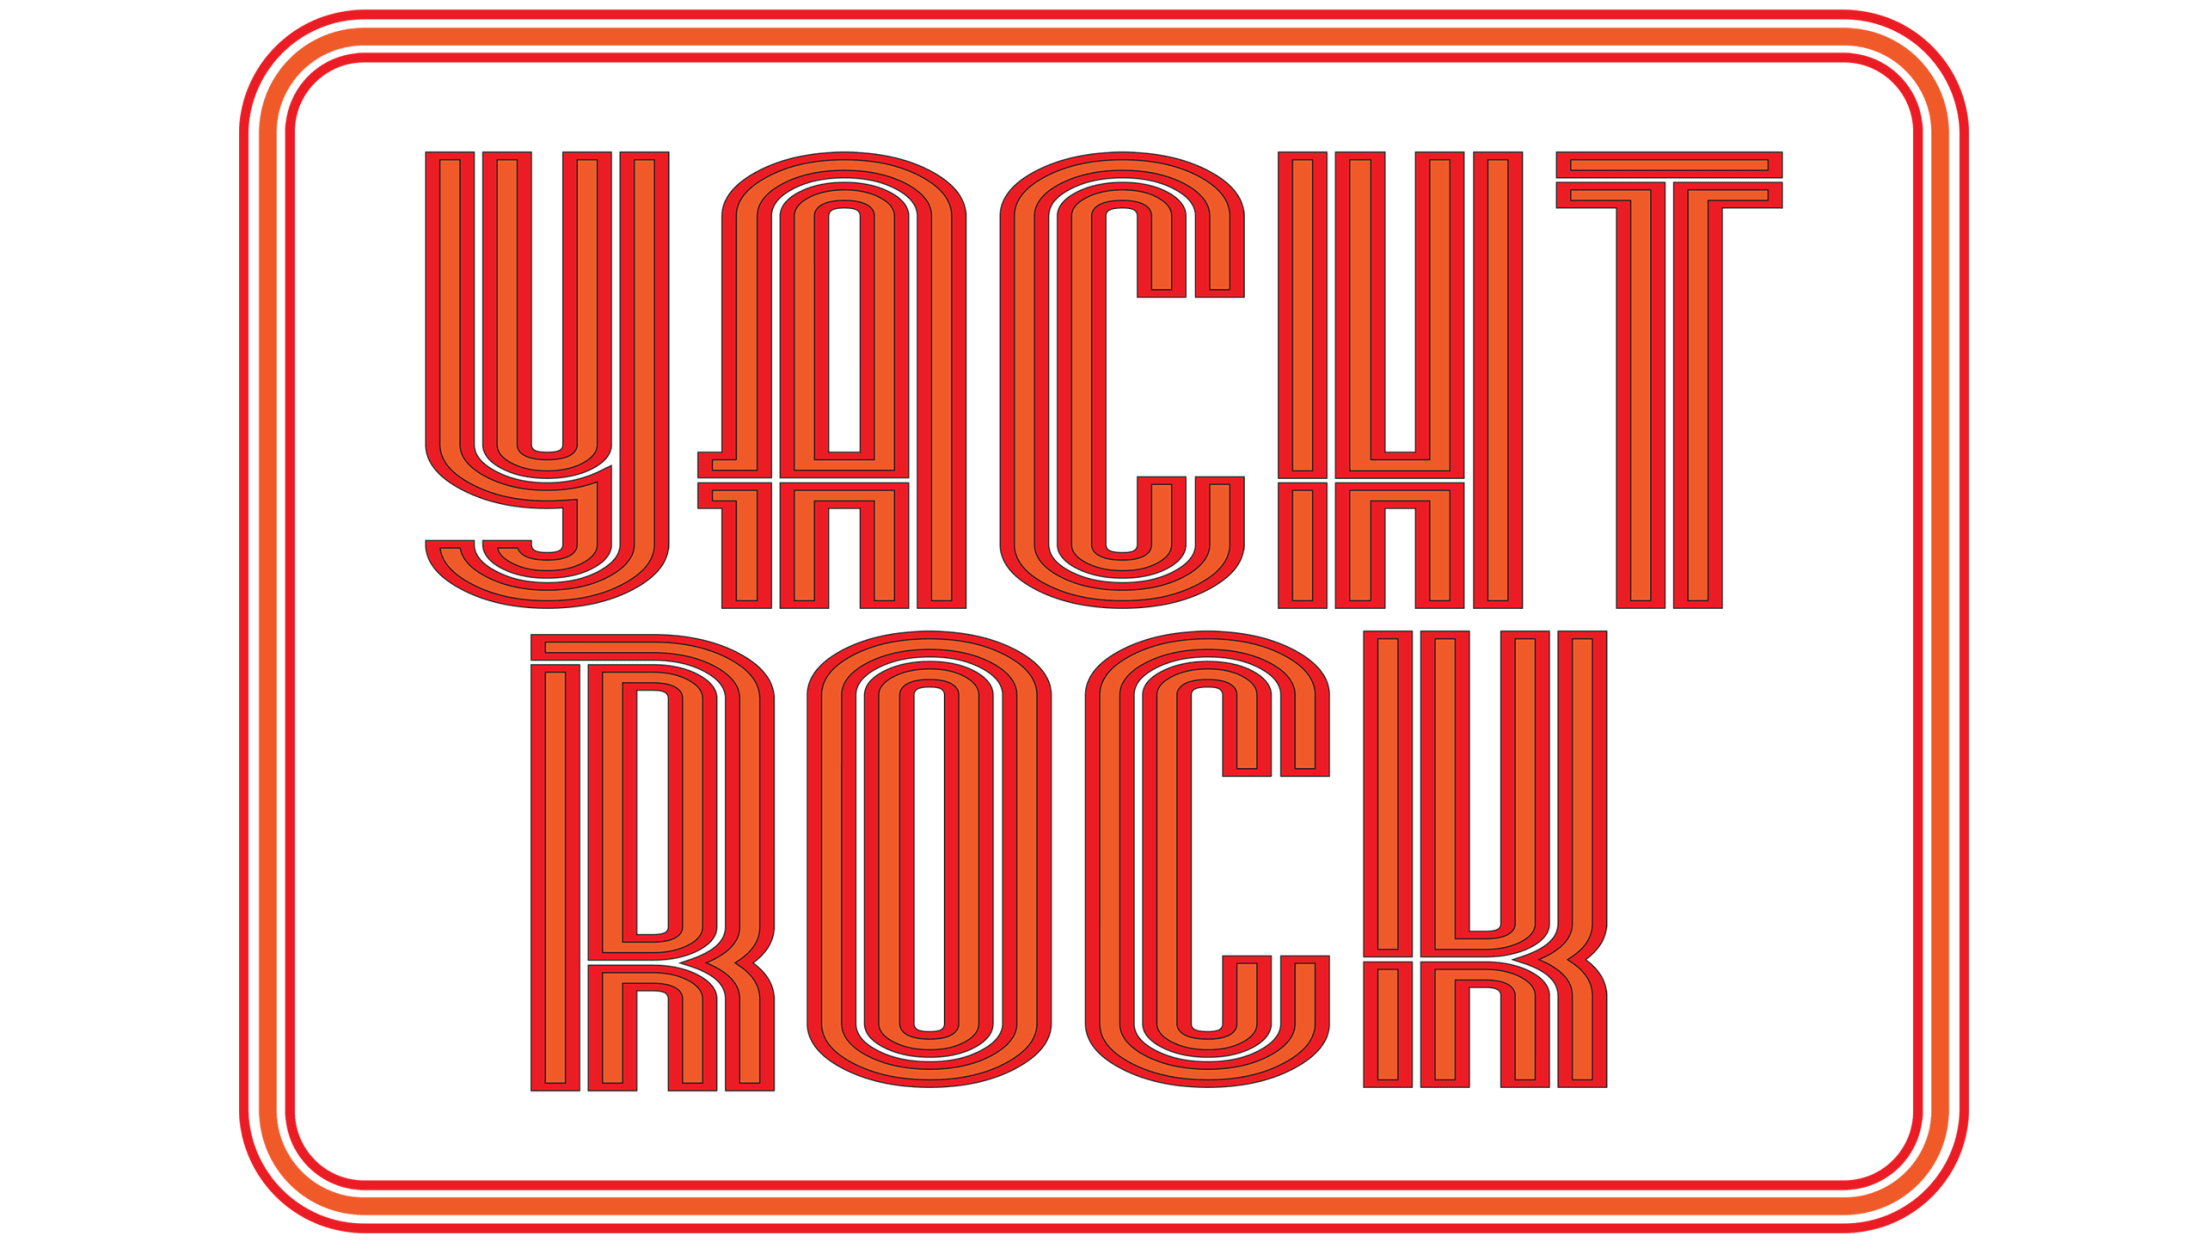 yacht rock revue logo